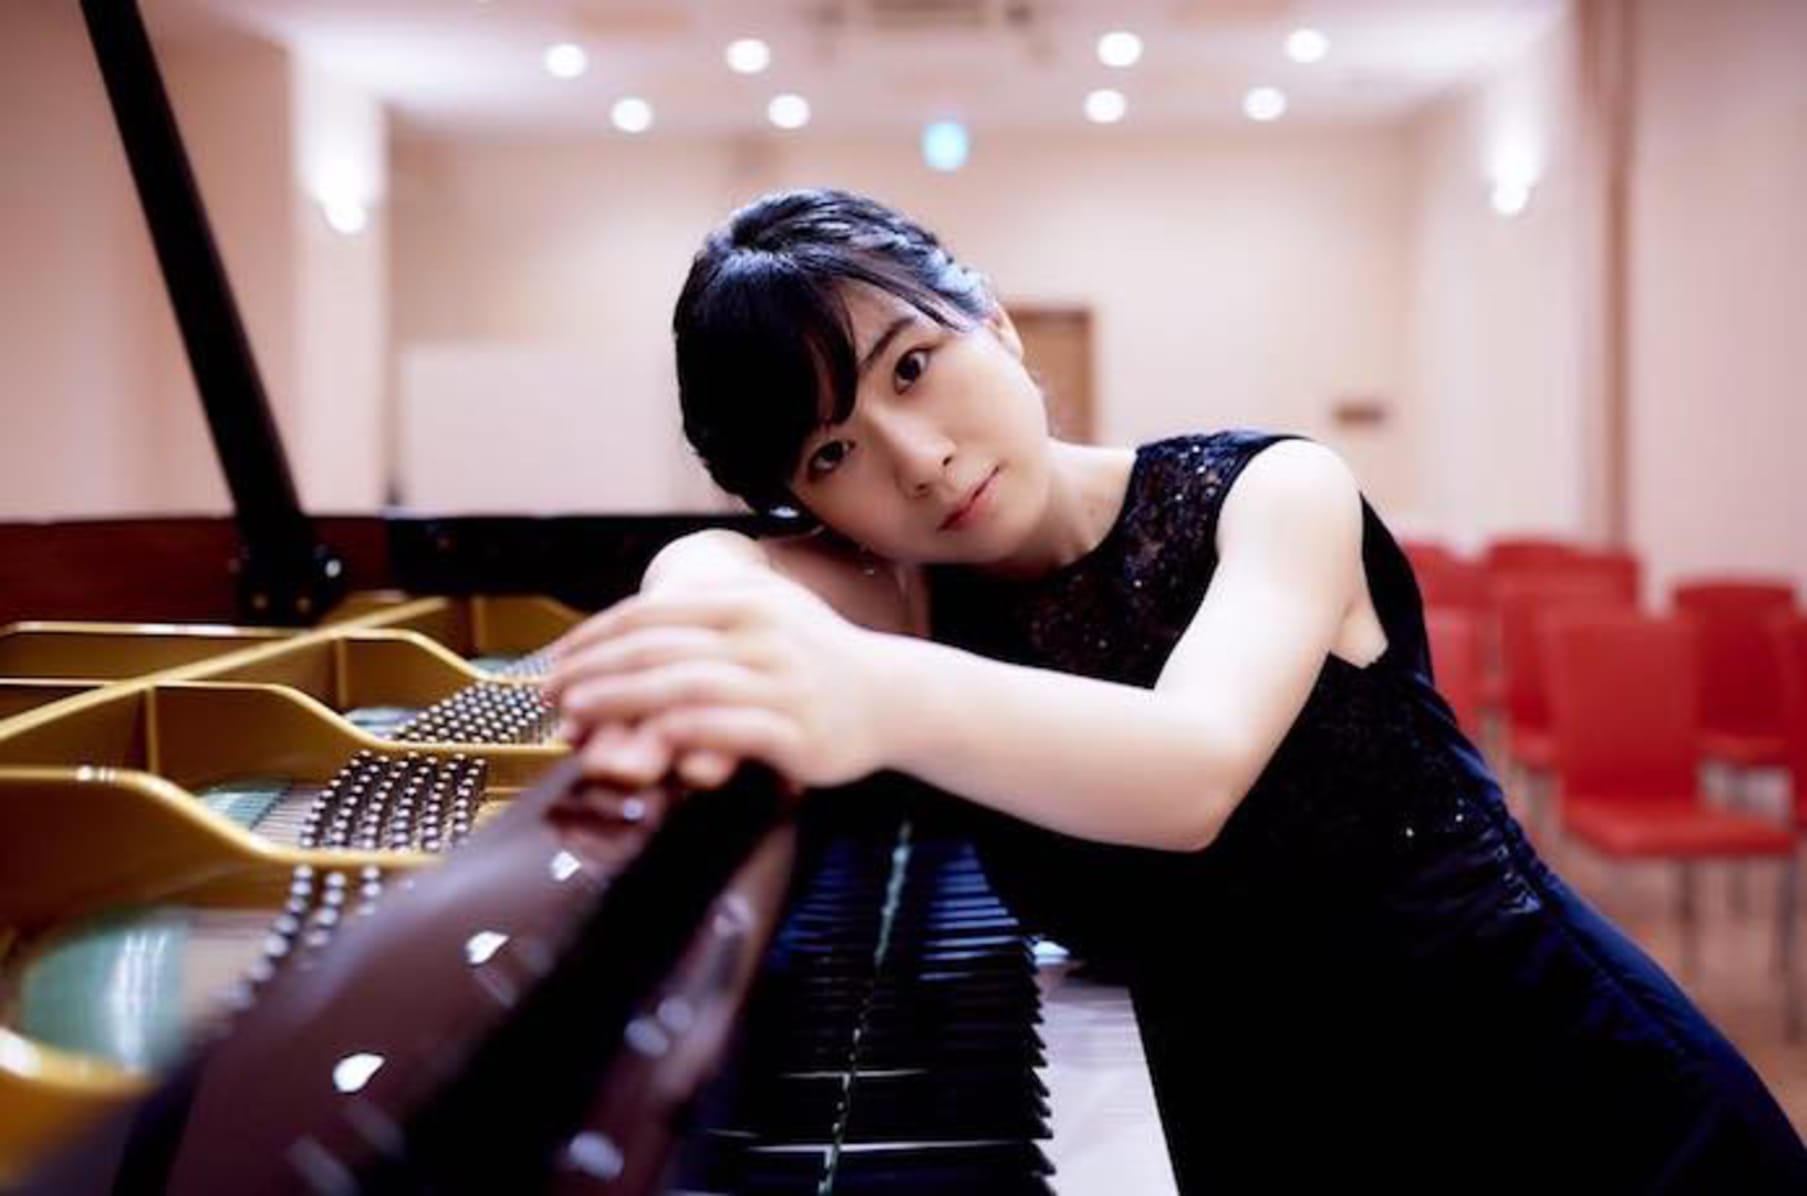 Nữ nghệ sĩ piano Nhật Bản sống tiết kiệm đến mức khó tin, lưu diễn thế giới nhưng vẫn chắt chiu hết mức, bữa ăn chưa đầy 1 nghìn đồng - Ảnh 8.